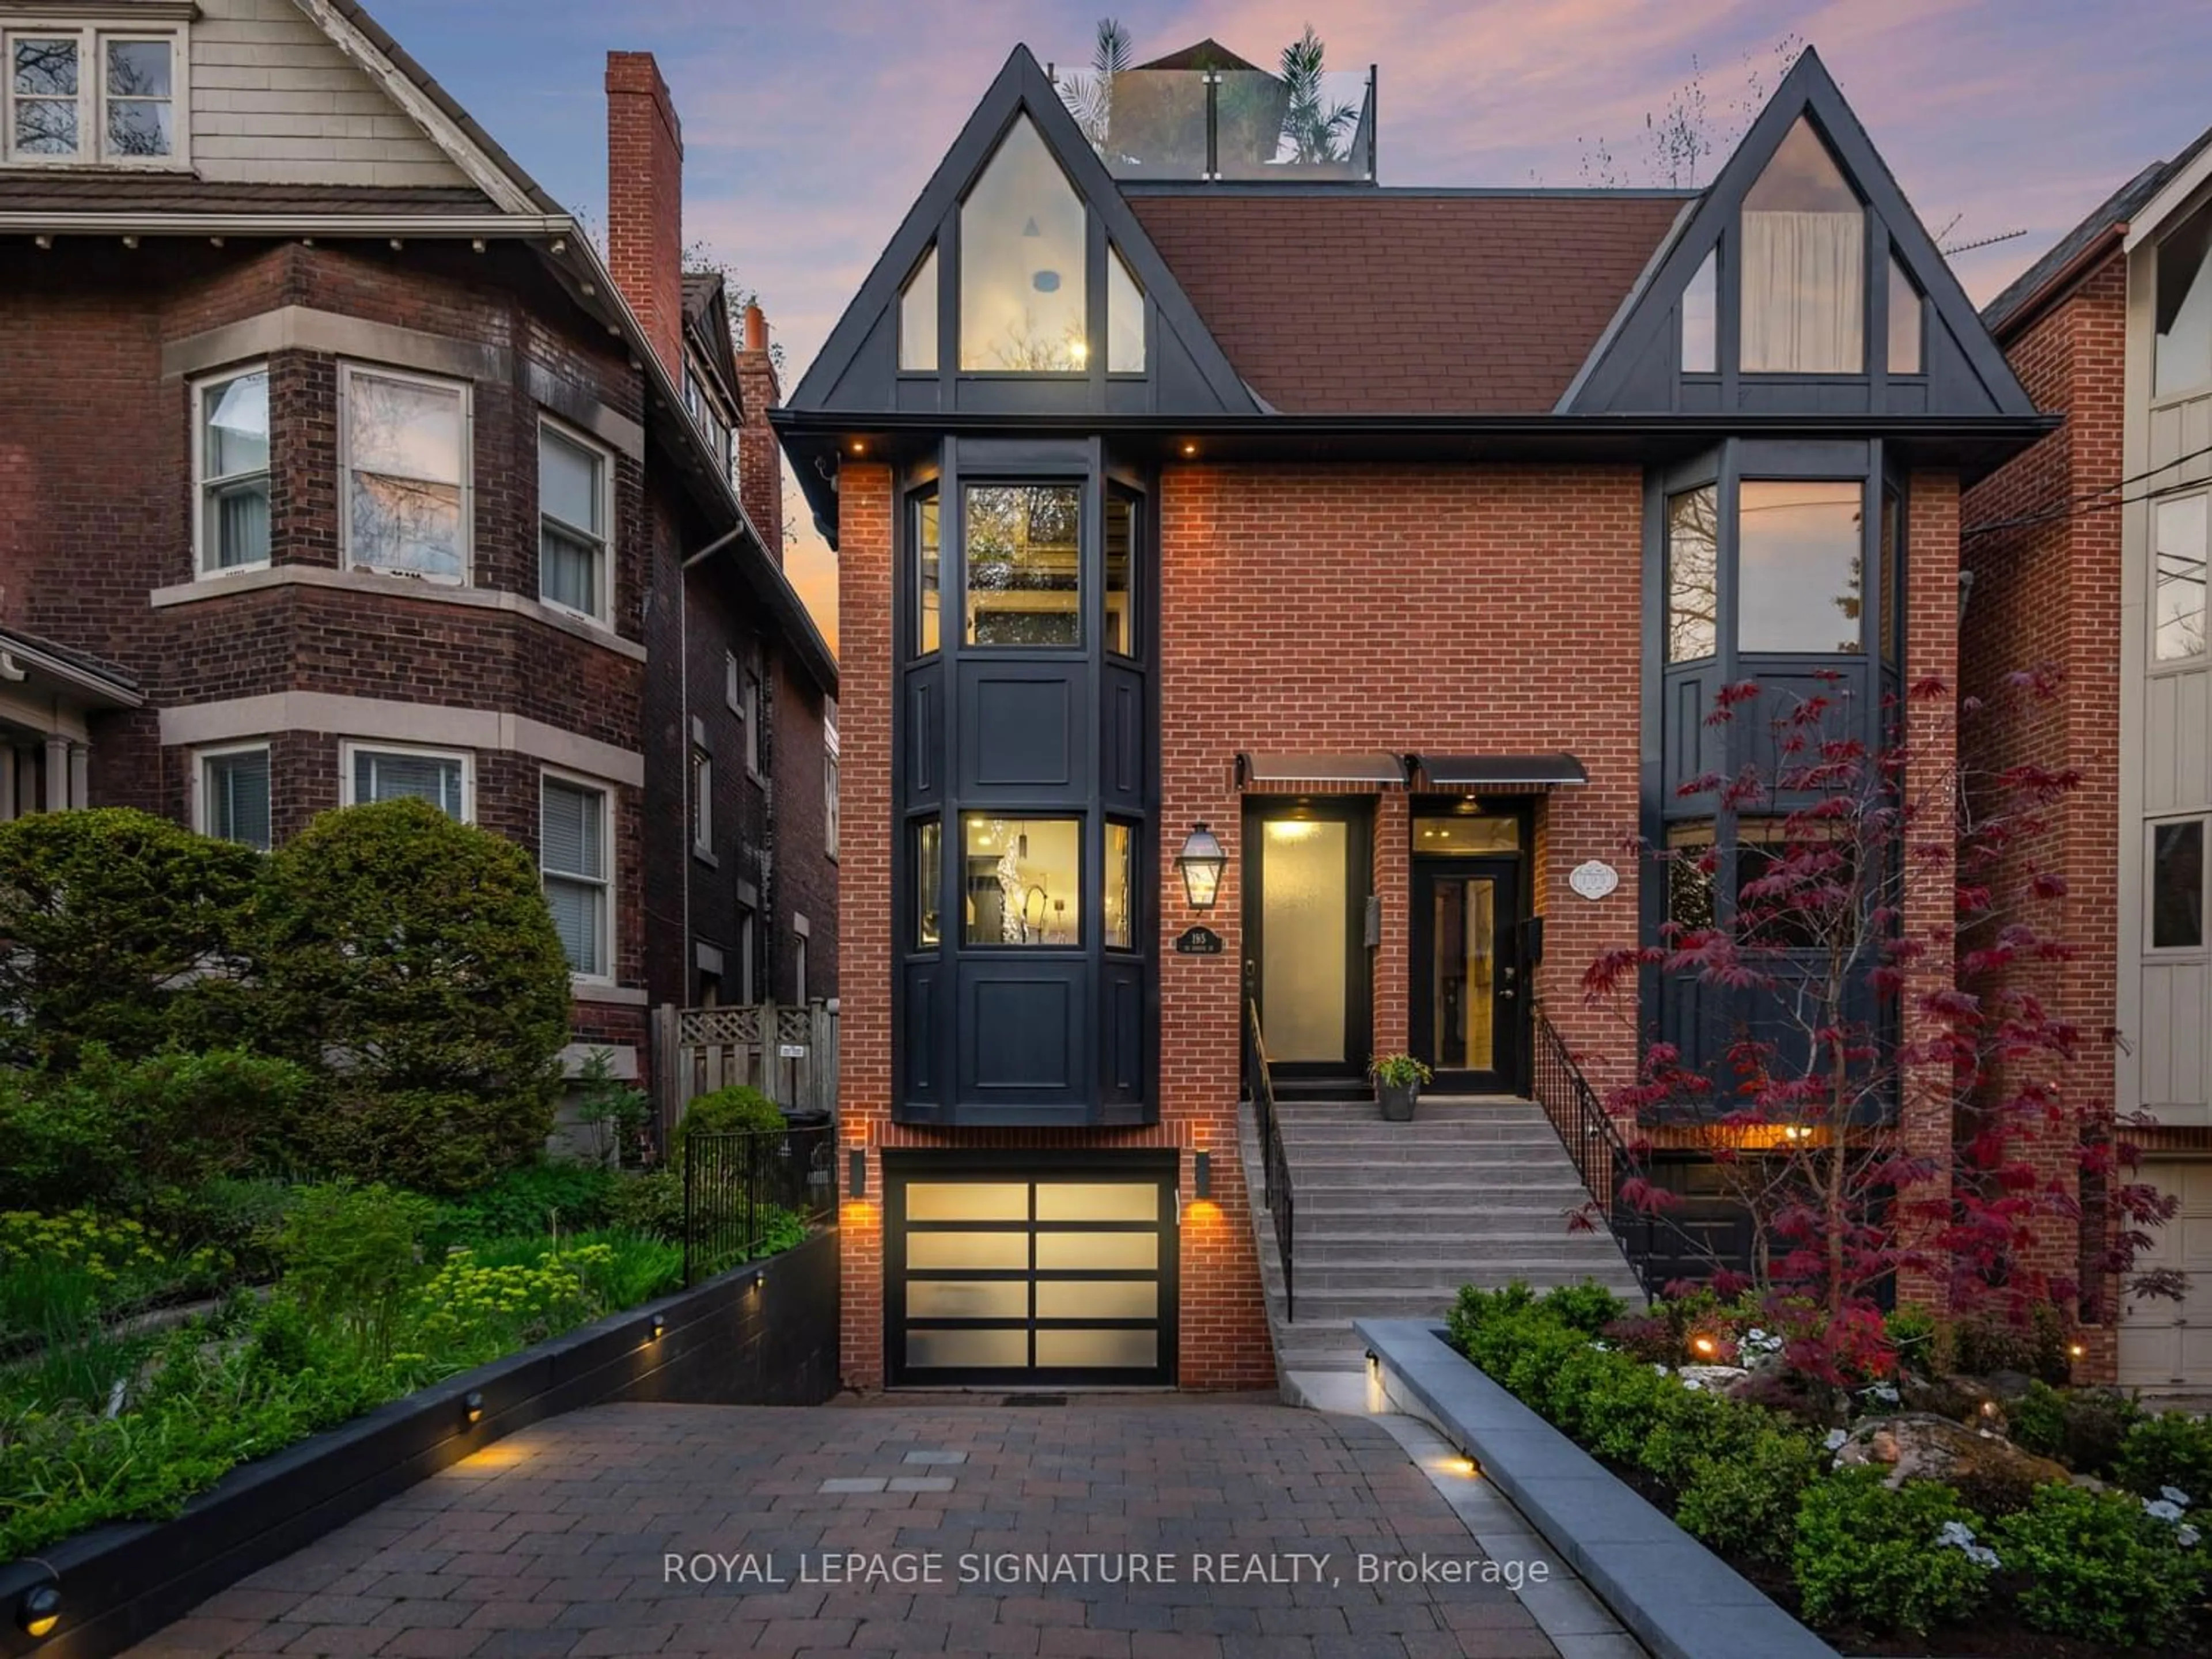 Home with brick exterior material for 195 De Grassi St, Toronto Ontario M4M 2K8